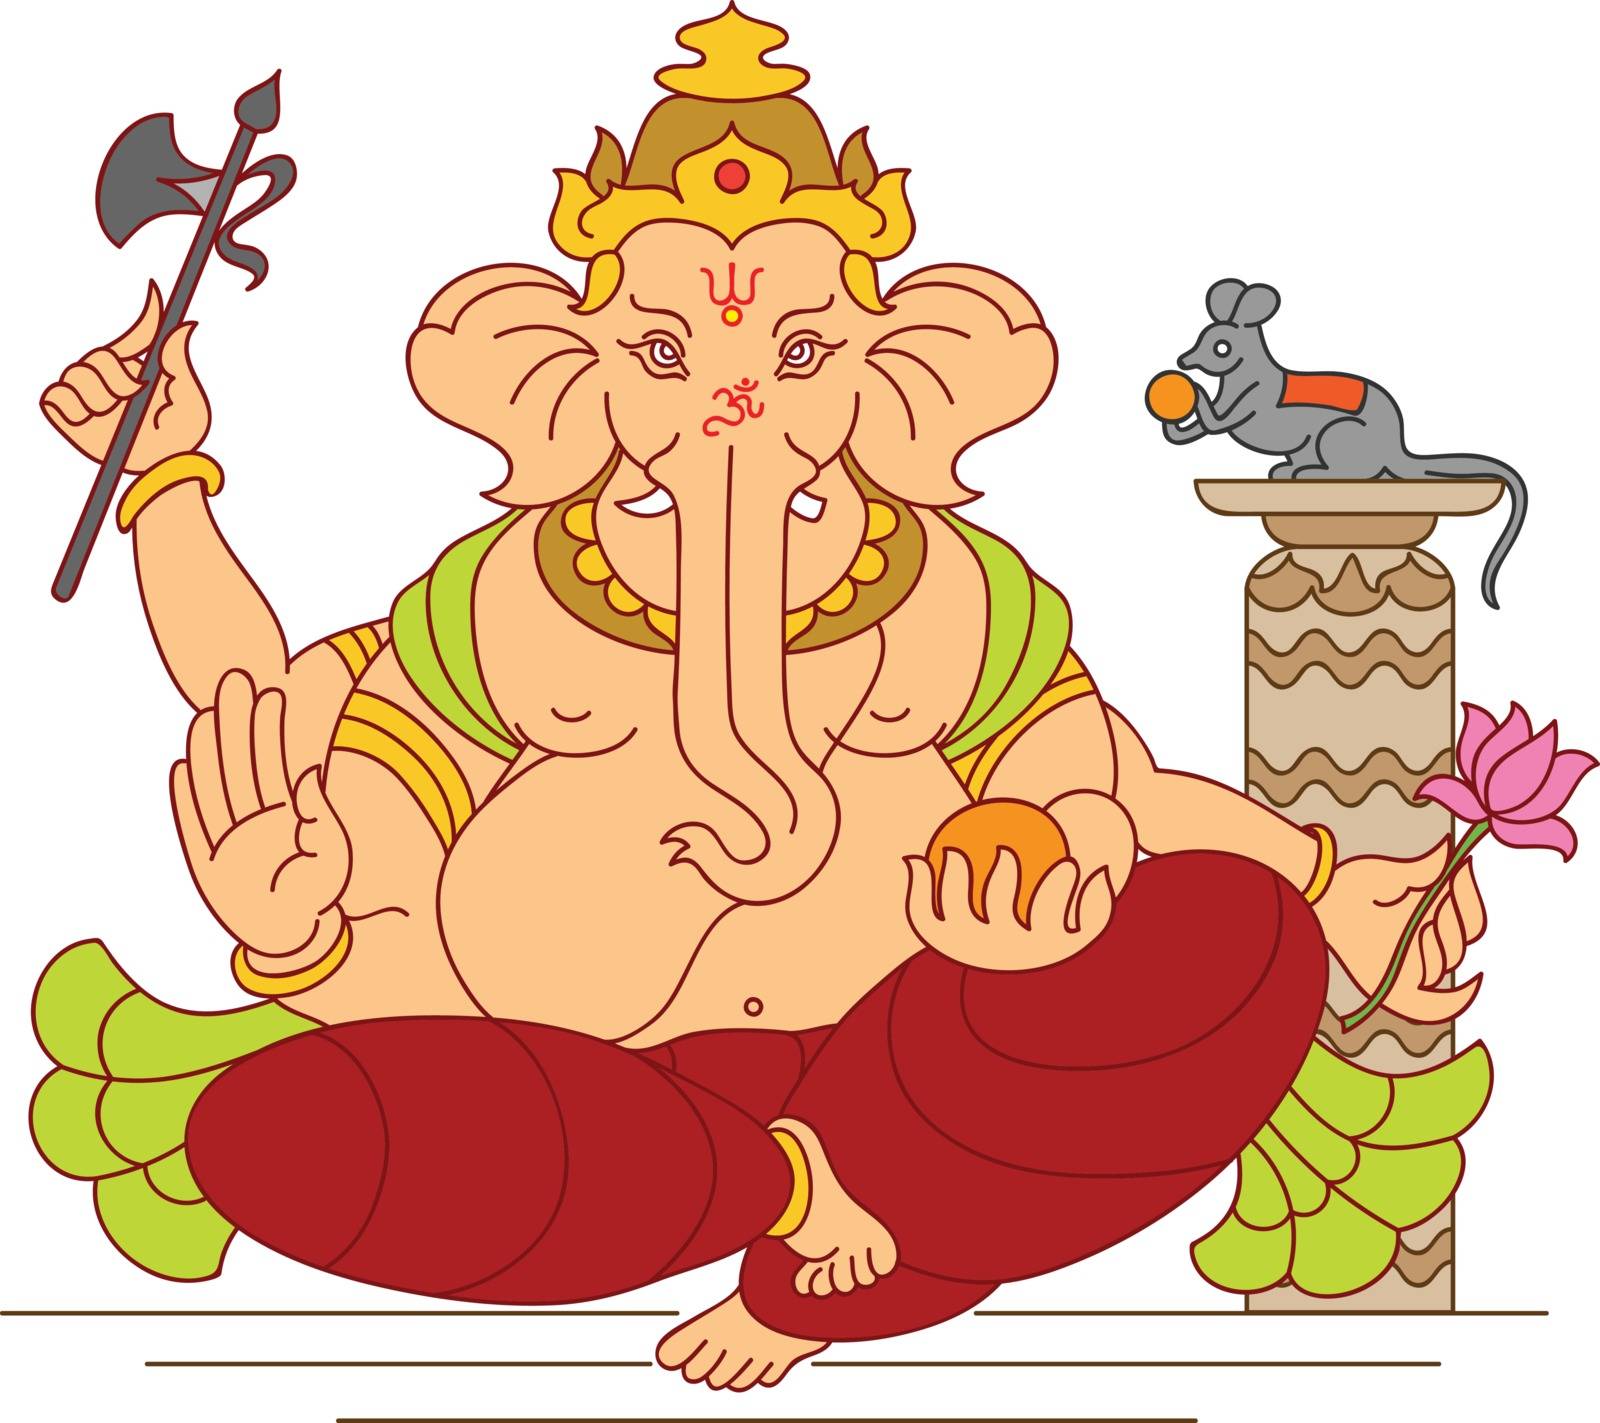 Ganesha The Lord Of Wisdom by AjayShri